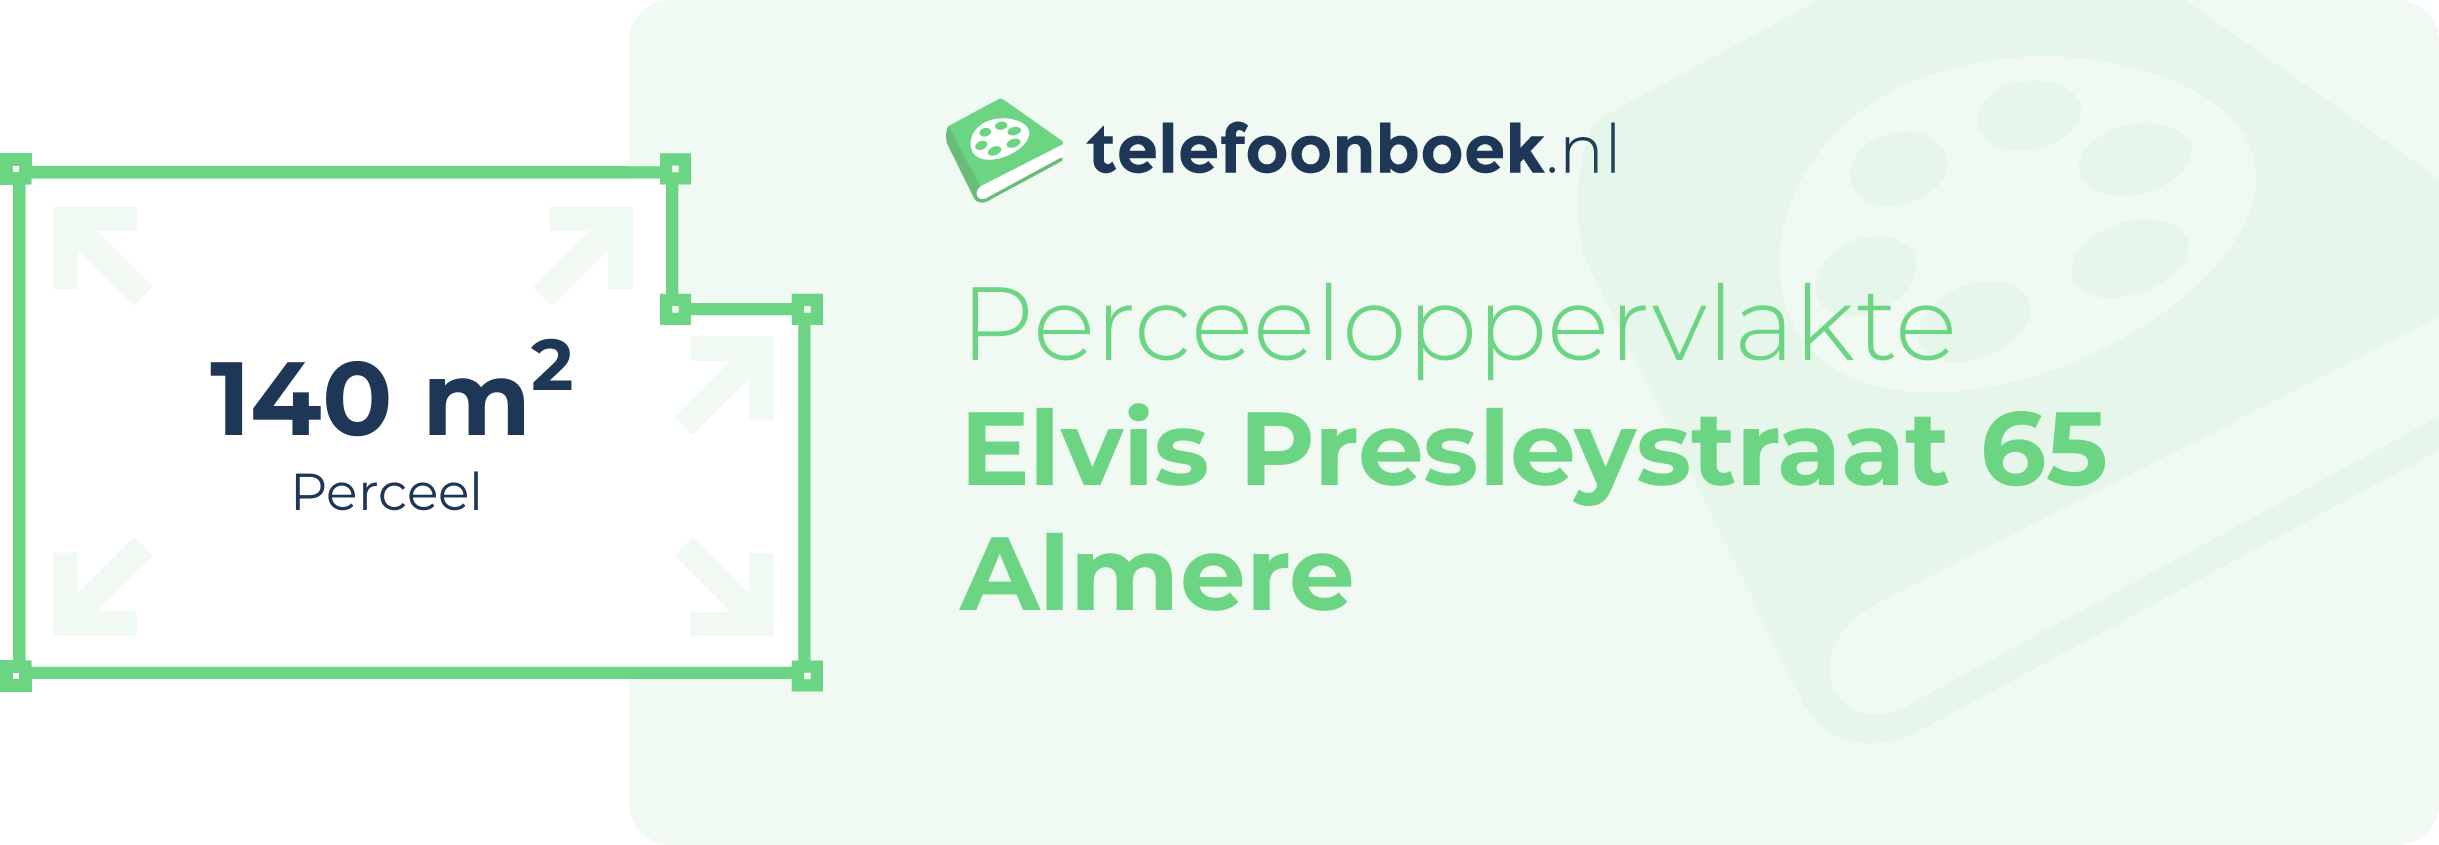 Perceeloppervlakte Elvis Presleystraat 65 Almere